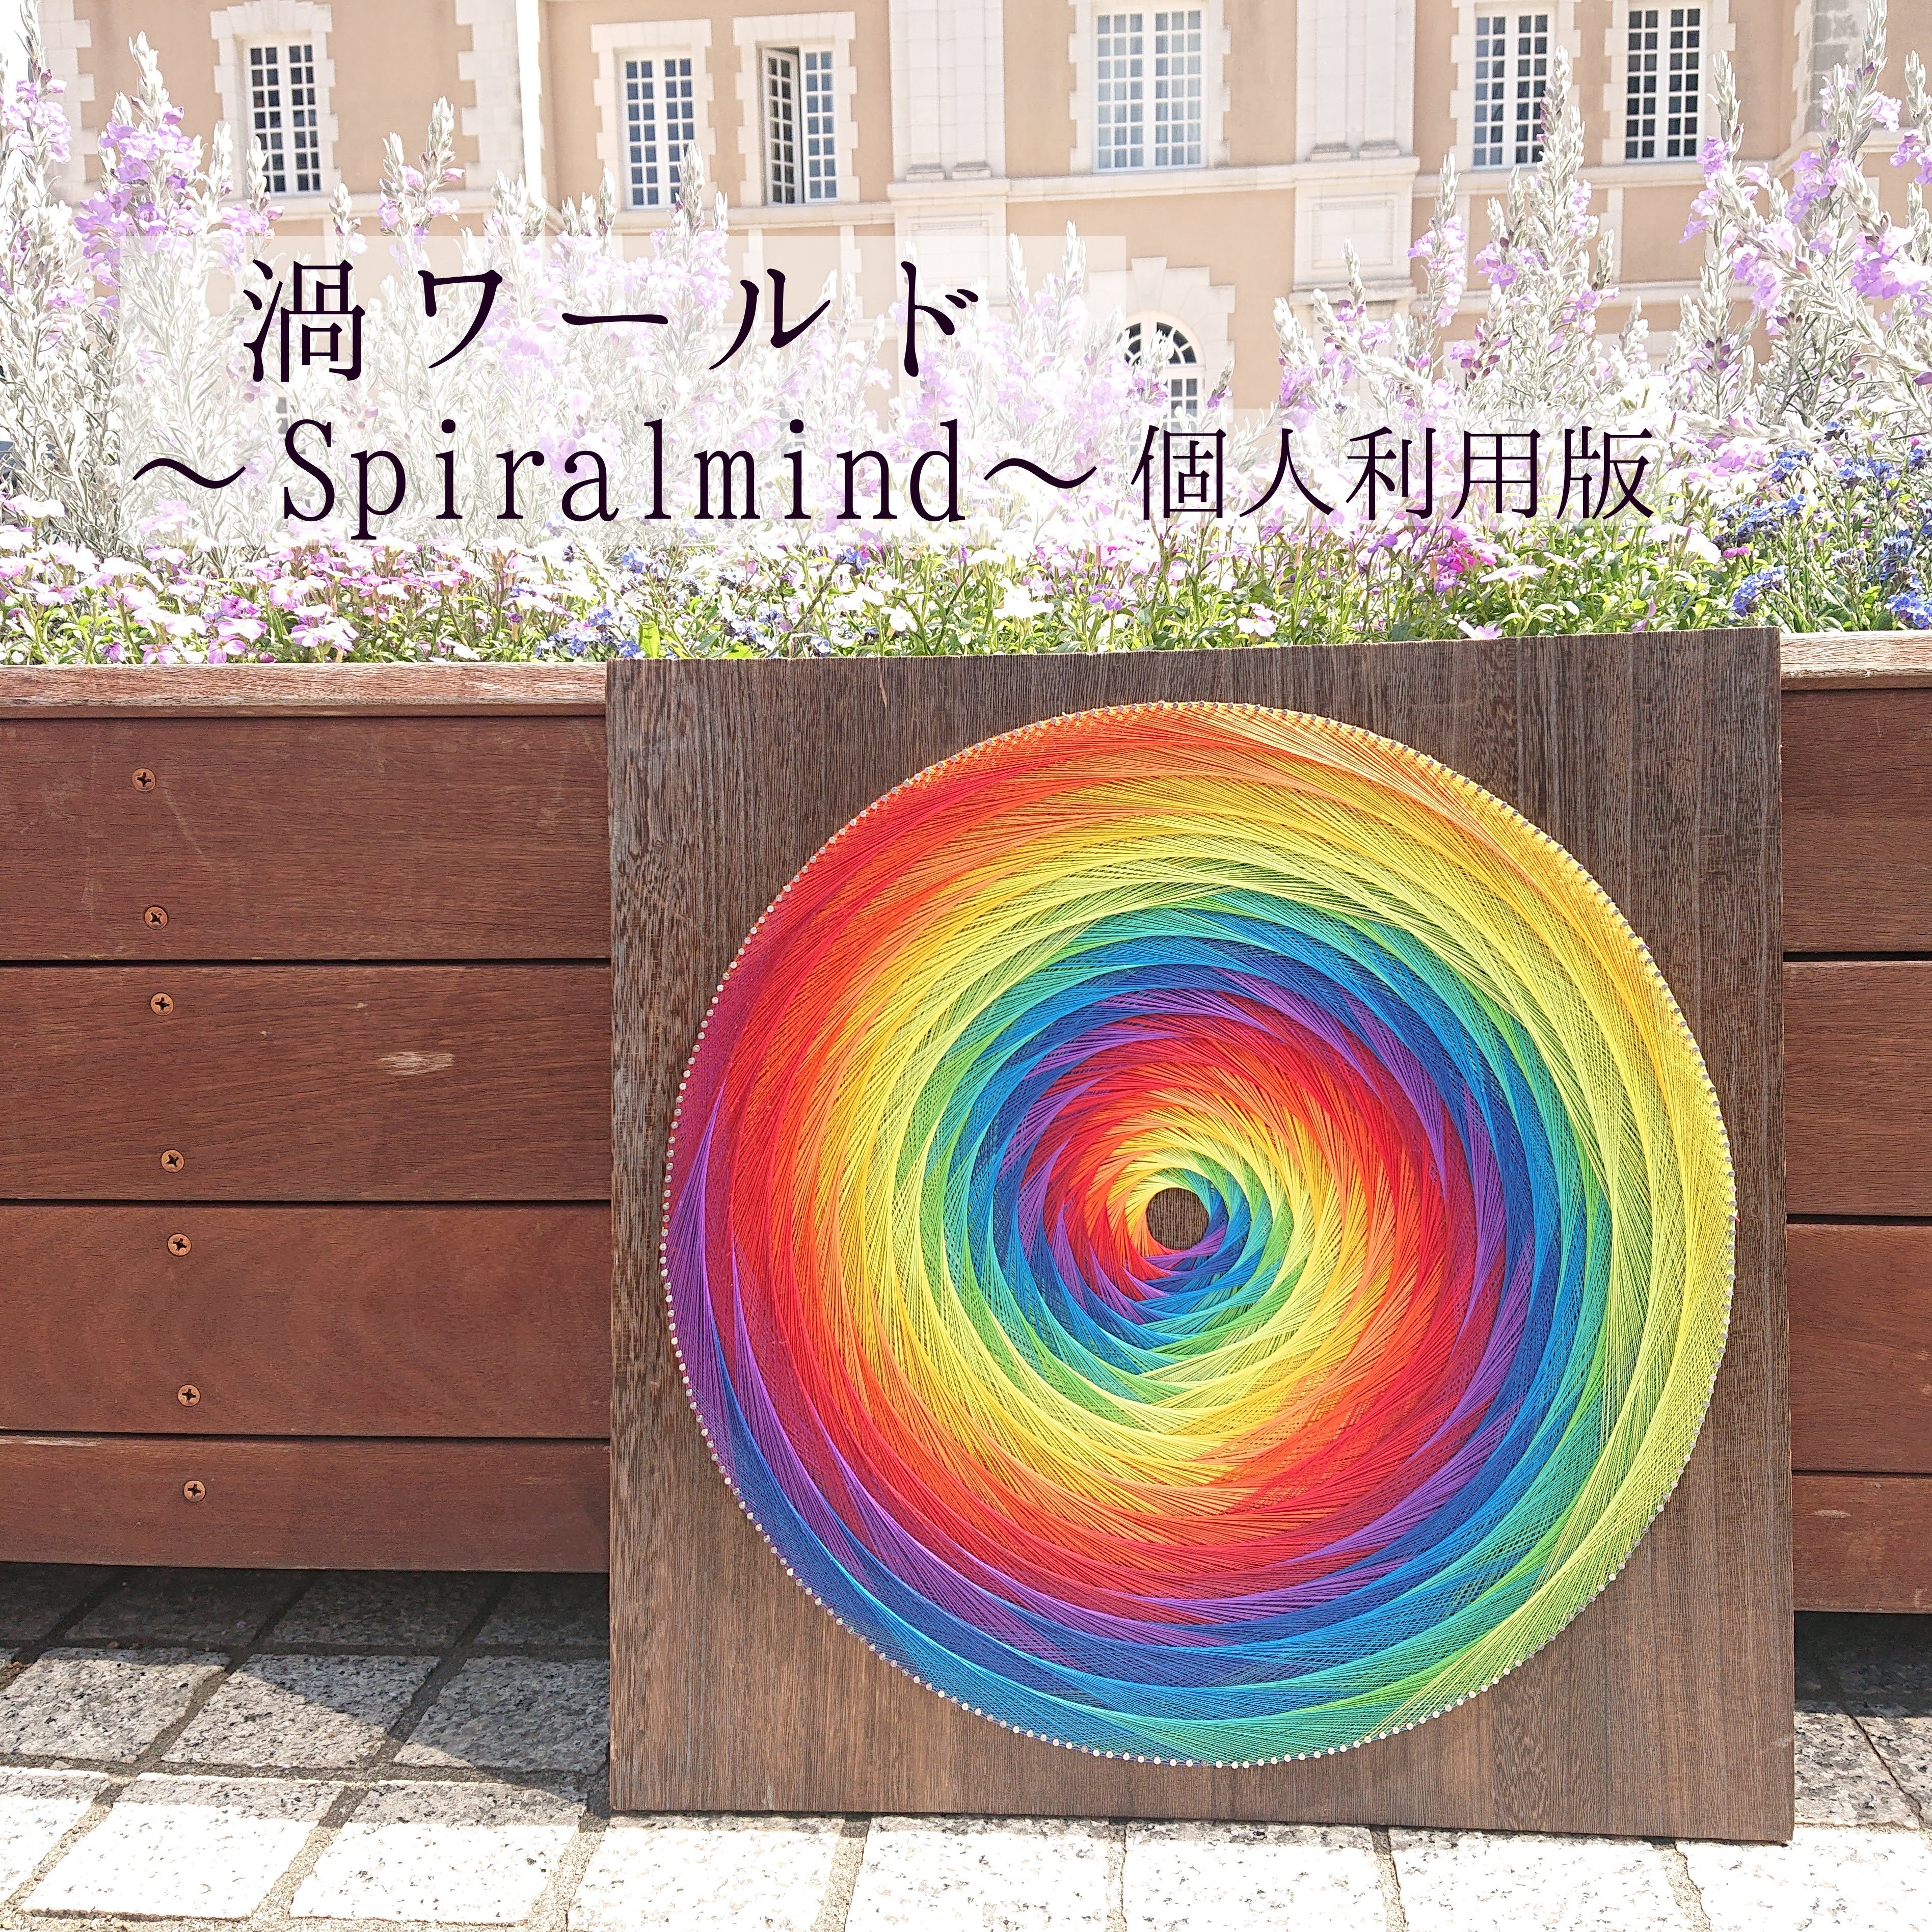 糸かけアート【渦ワールド〜Spiral mind〜】個人利用版テキスト